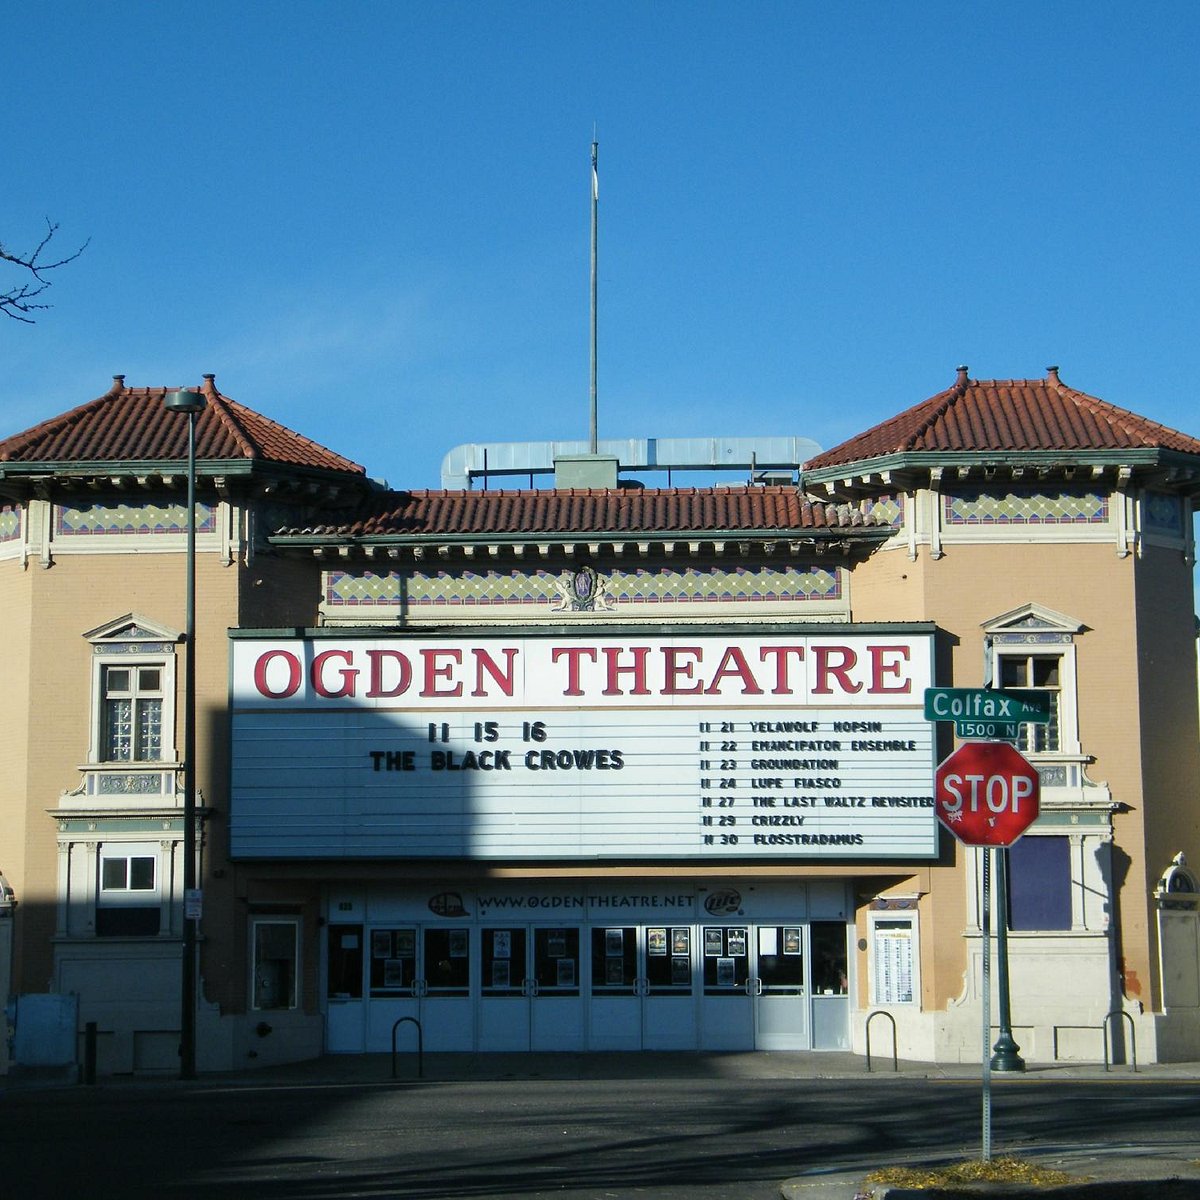 arlen busch recommends Adult Theater Denver